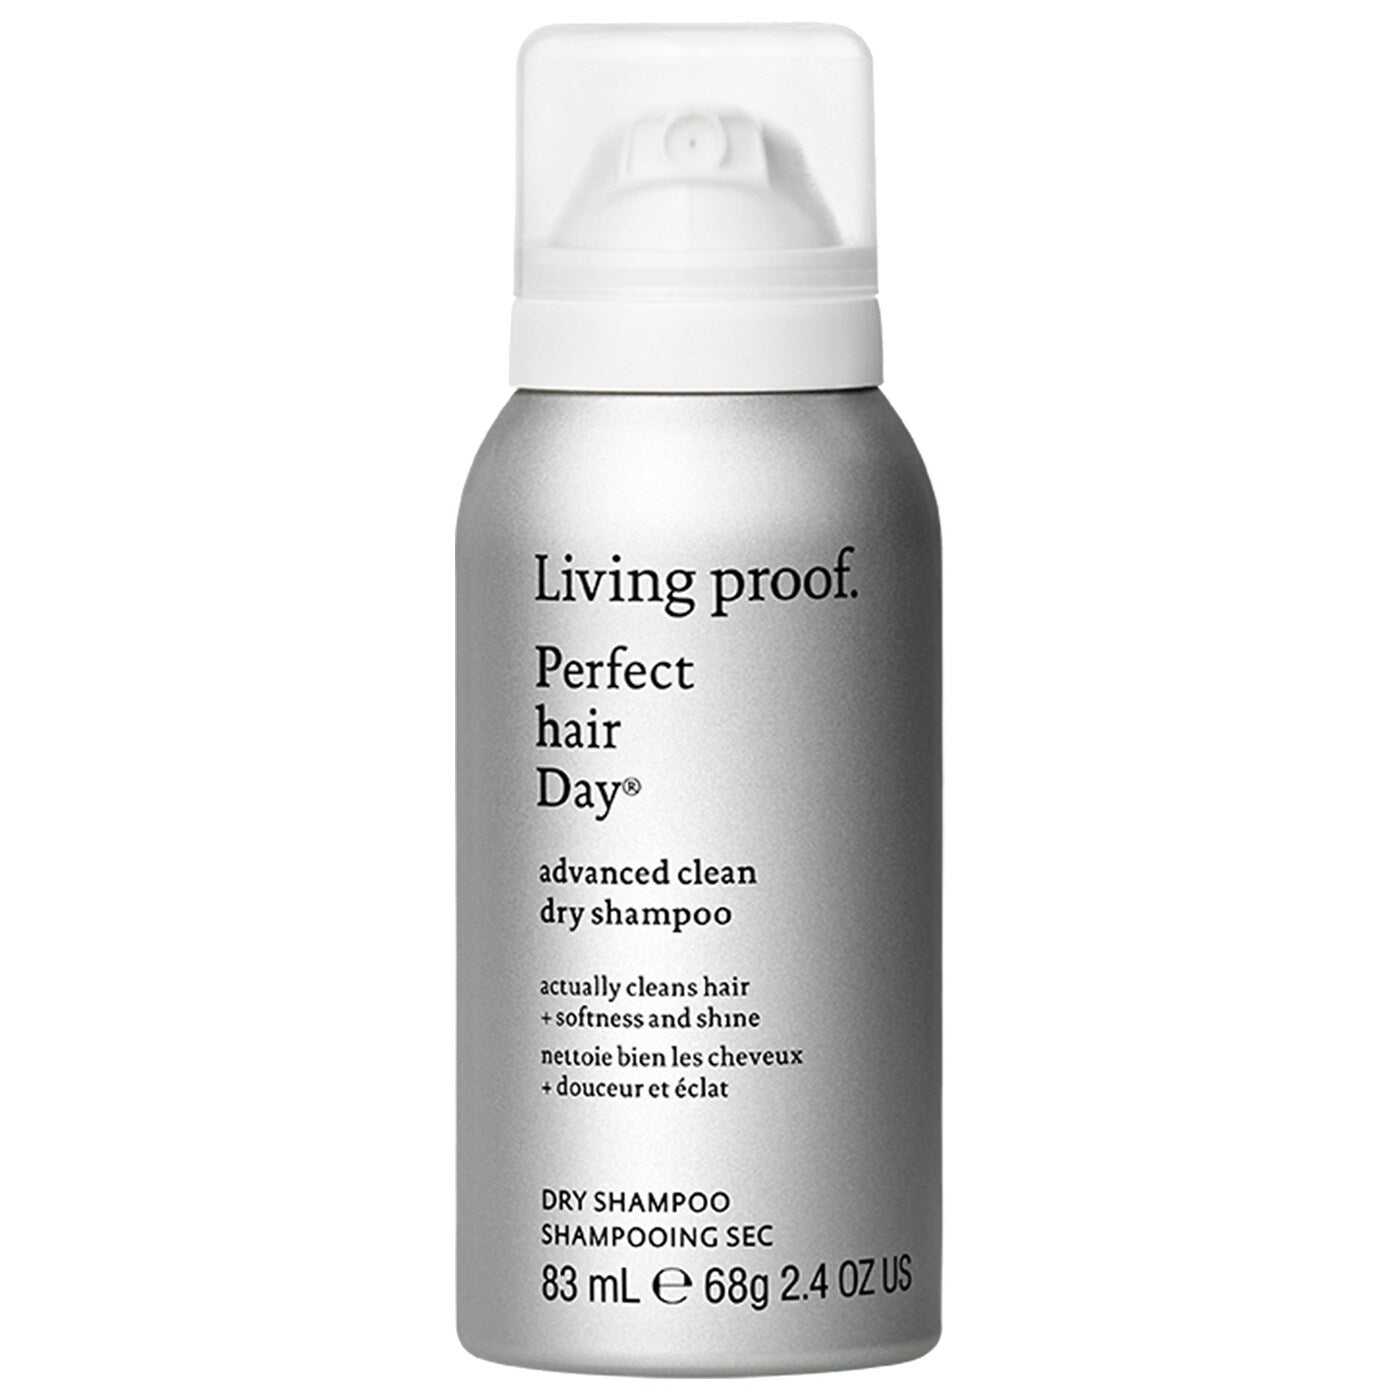 Living Proof PHD Advanced Clean Dry Shampoo